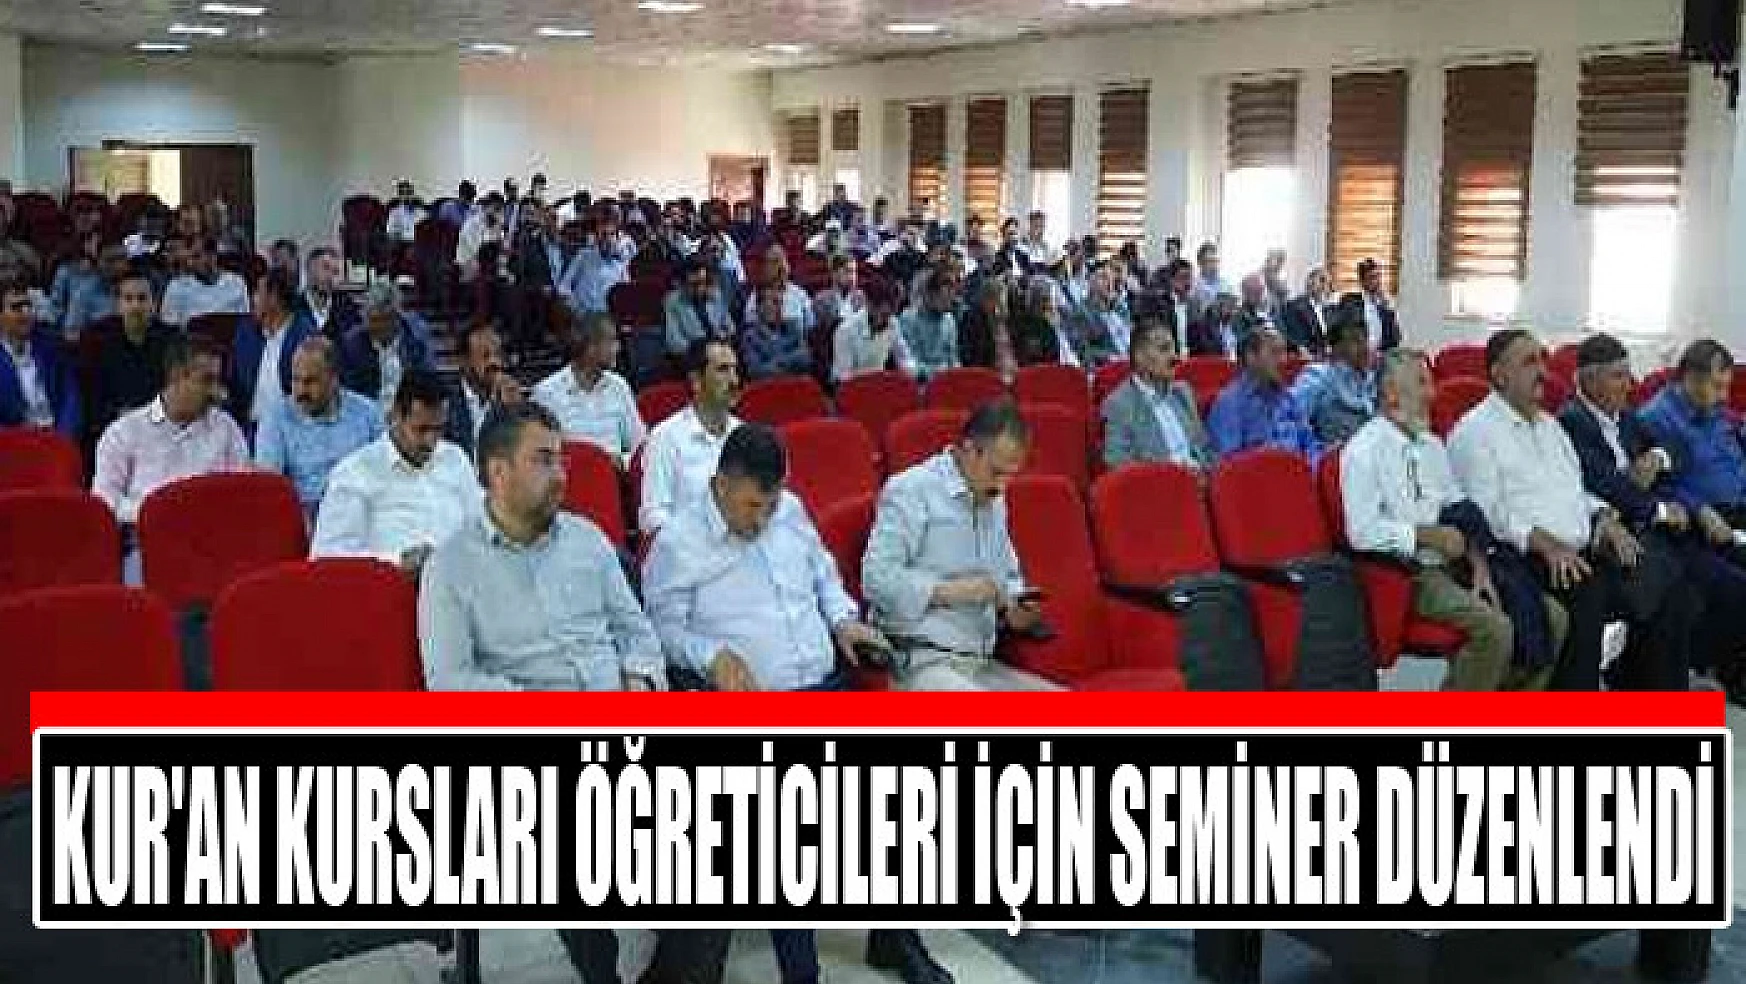 Kur'an kursları öğreticileri için seminer düzenlendi